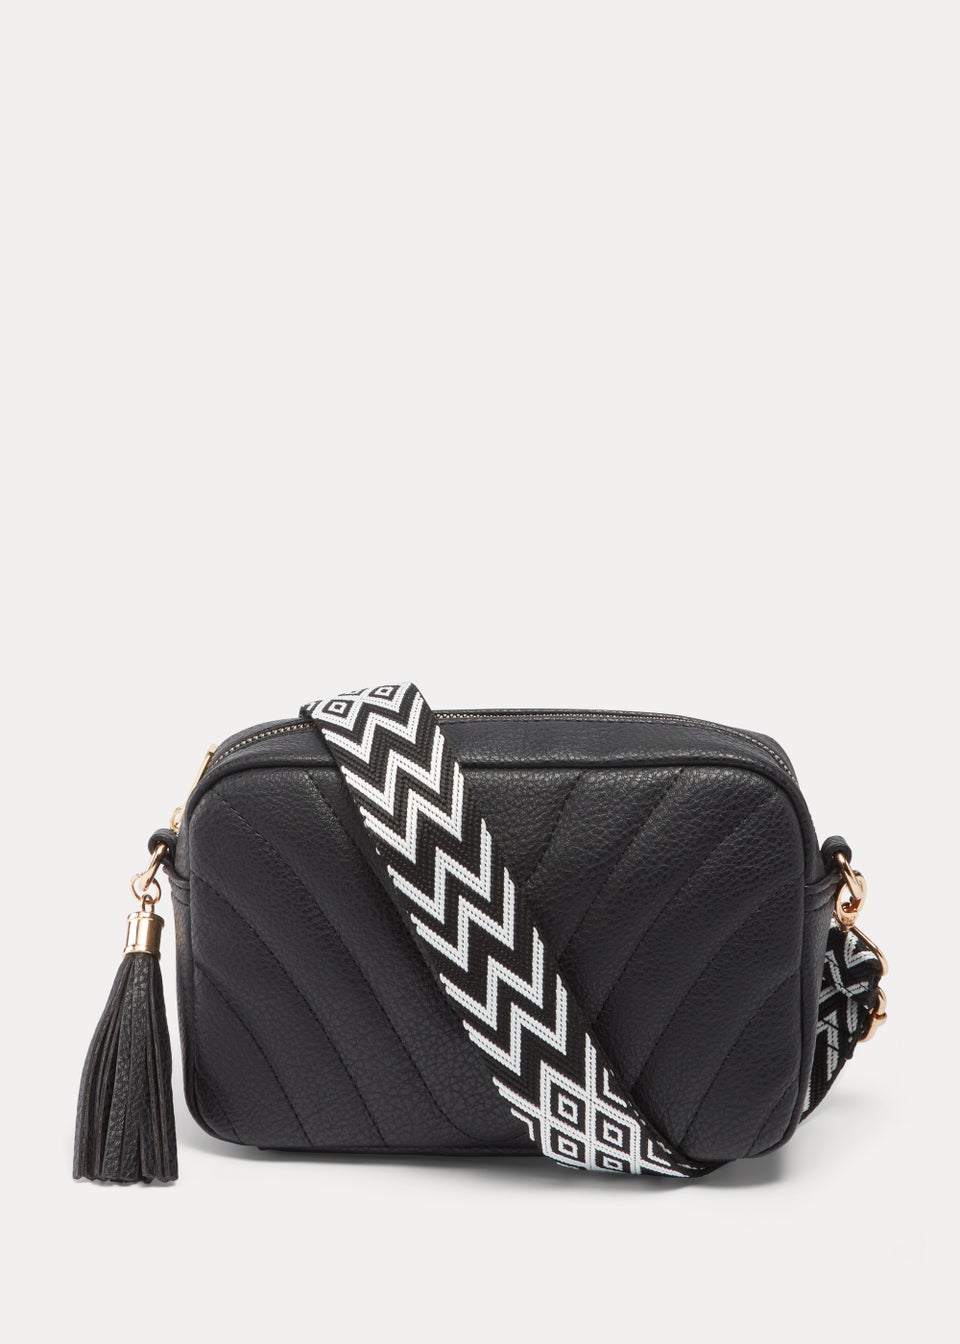 Black & White Single Bag Strap